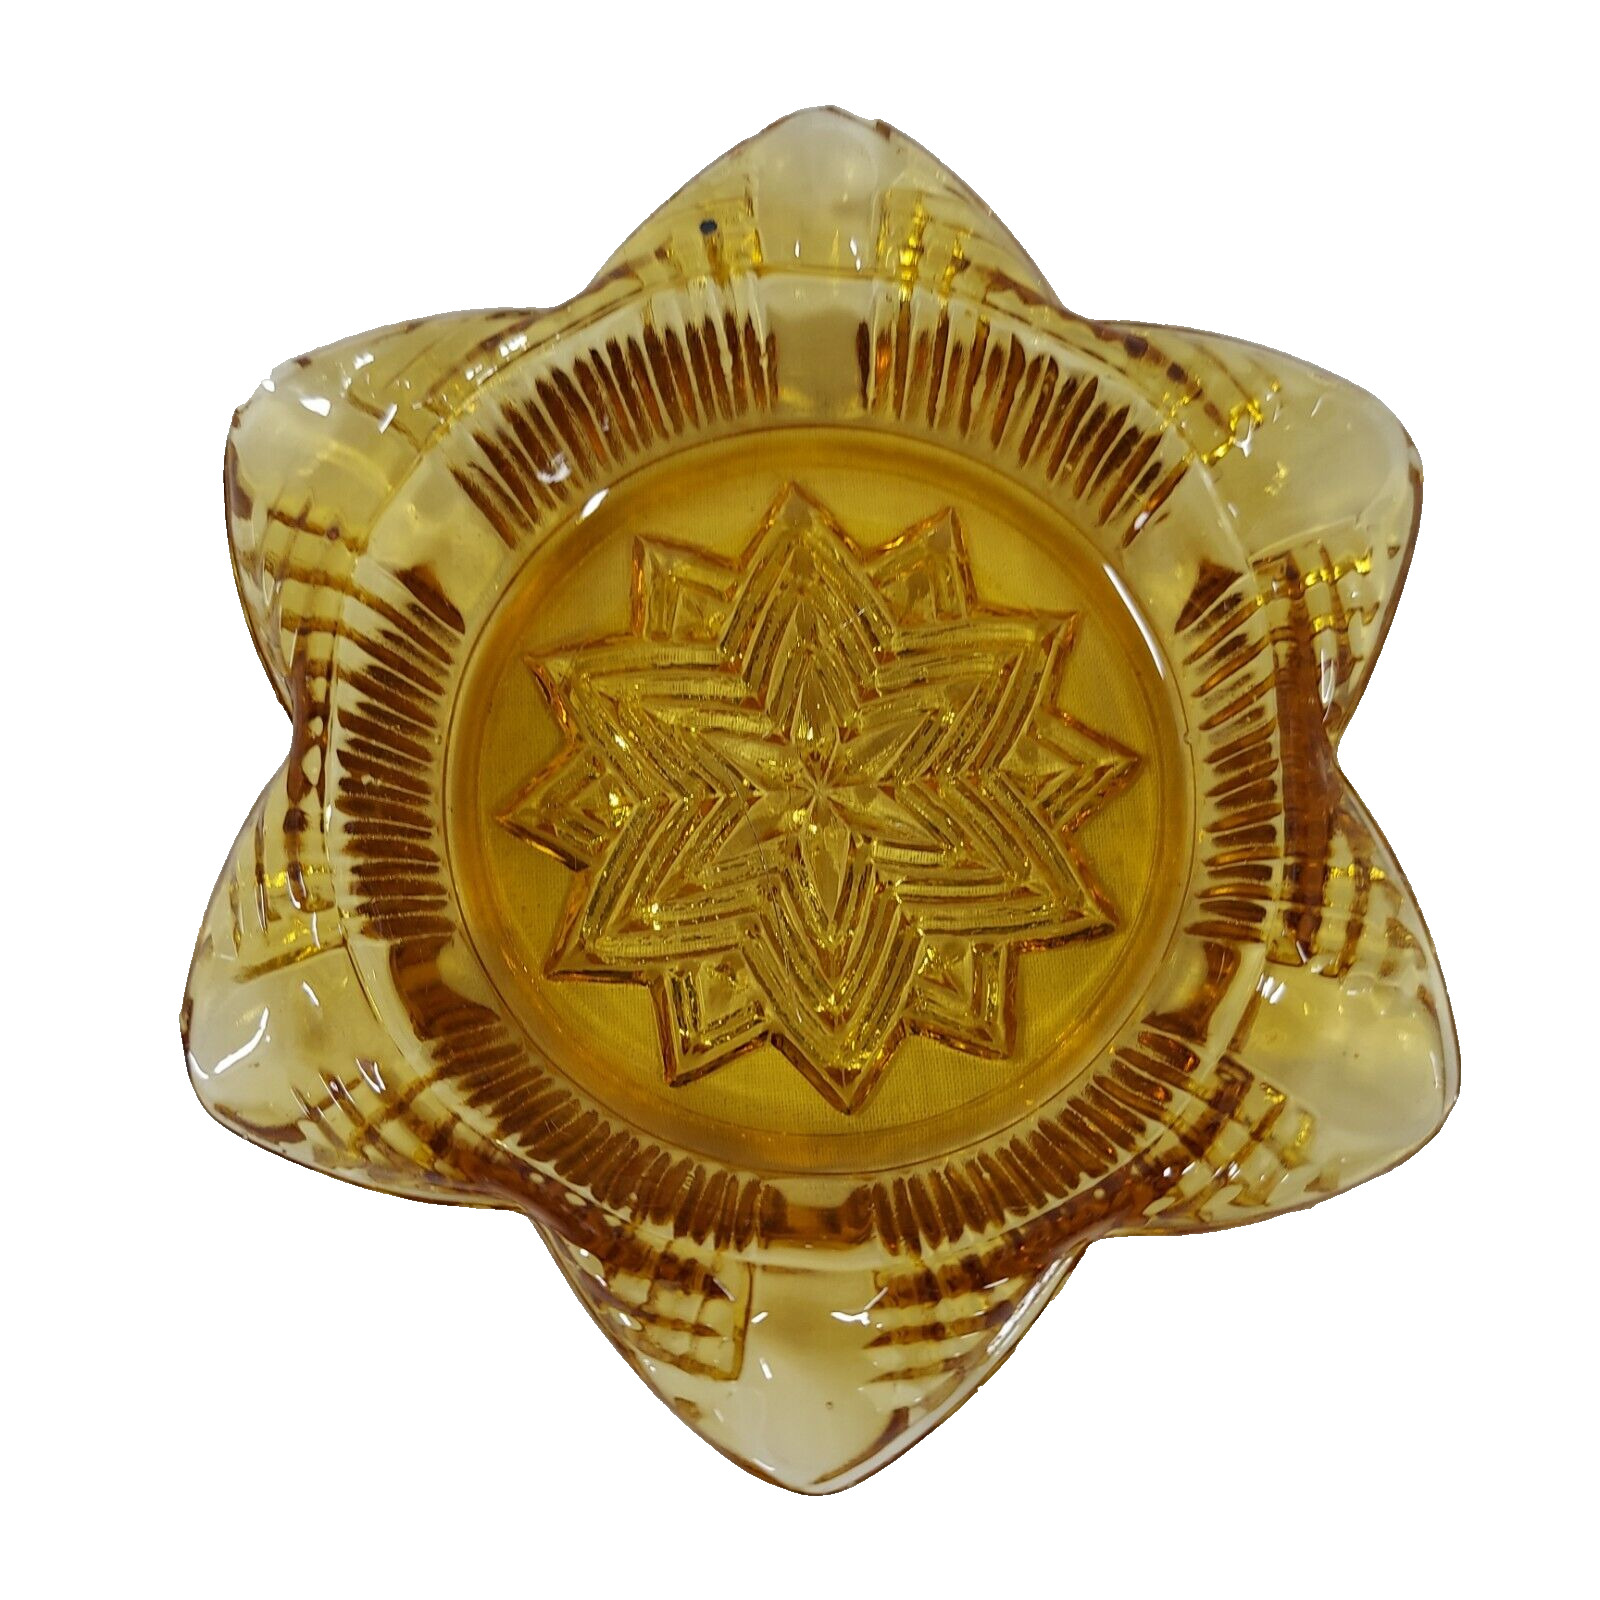 Snowflake Star 6 Petal Amber Yellow Orange Pressed Glass Ash Tray MCM Retro VTG